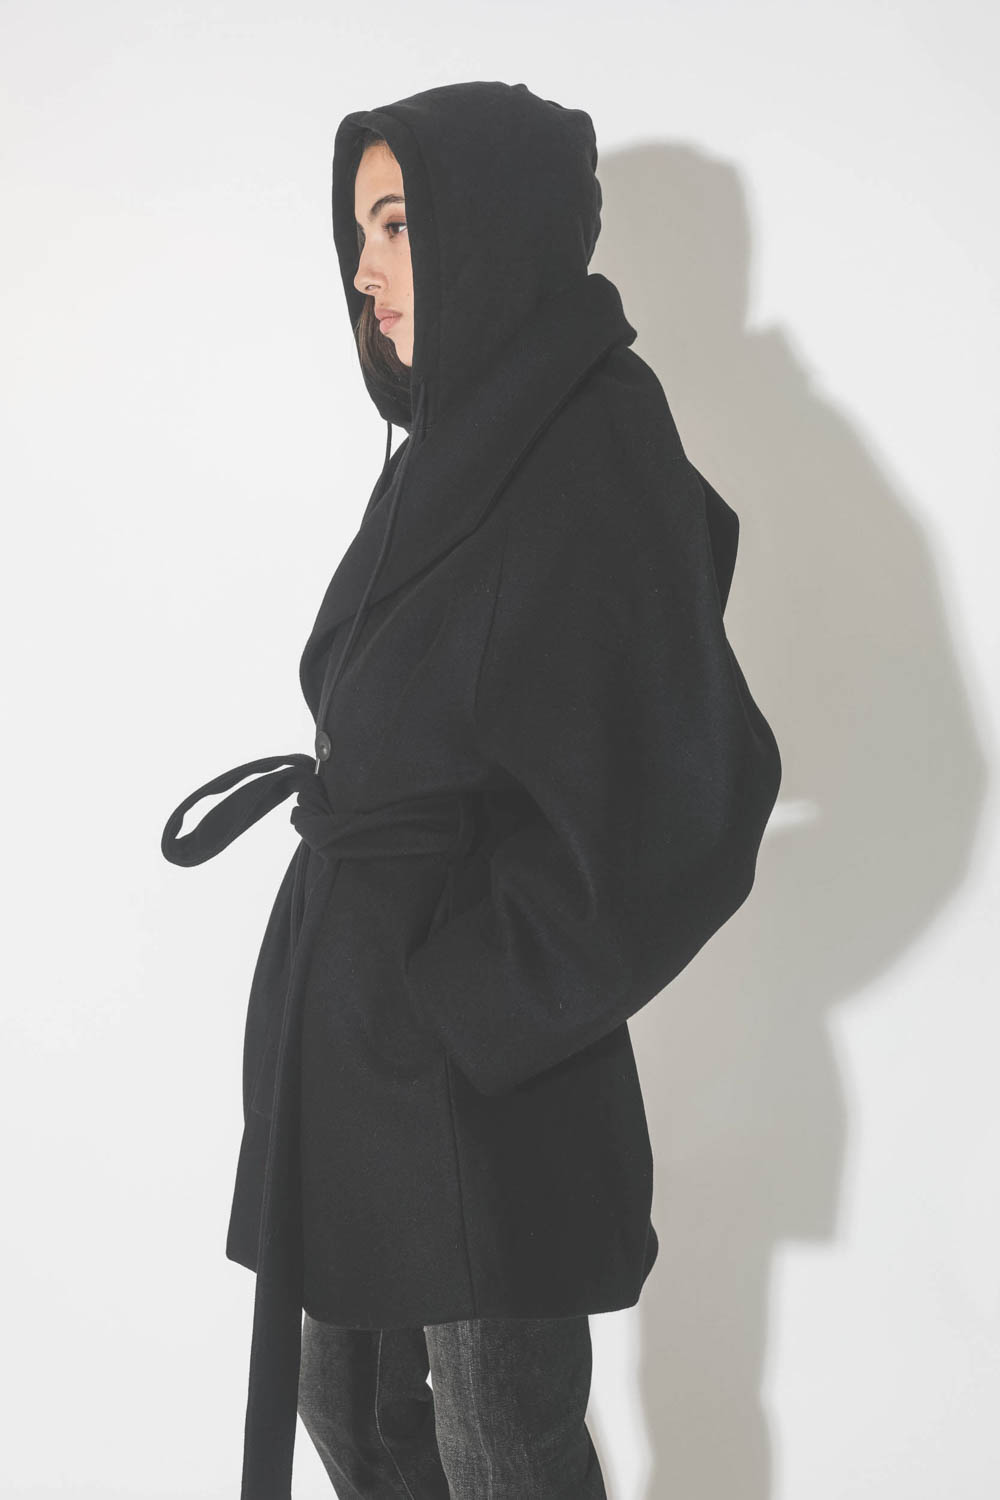 Manteau caban ceinturé en drap de laine noir Suzzane Vautrait. Détail du profil.